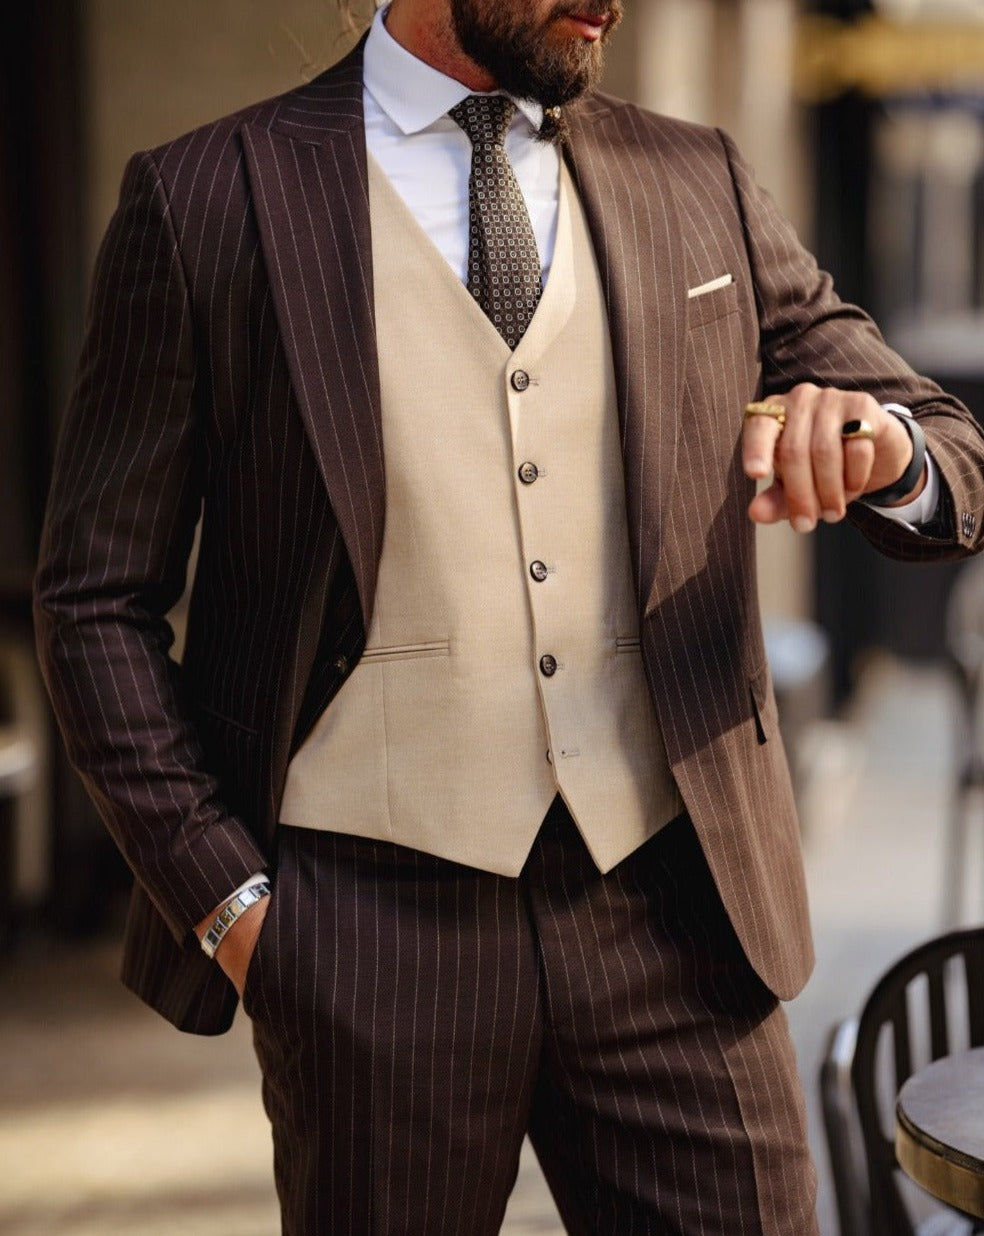 Self-patterned Slim Fit Suit - Beige-Brown